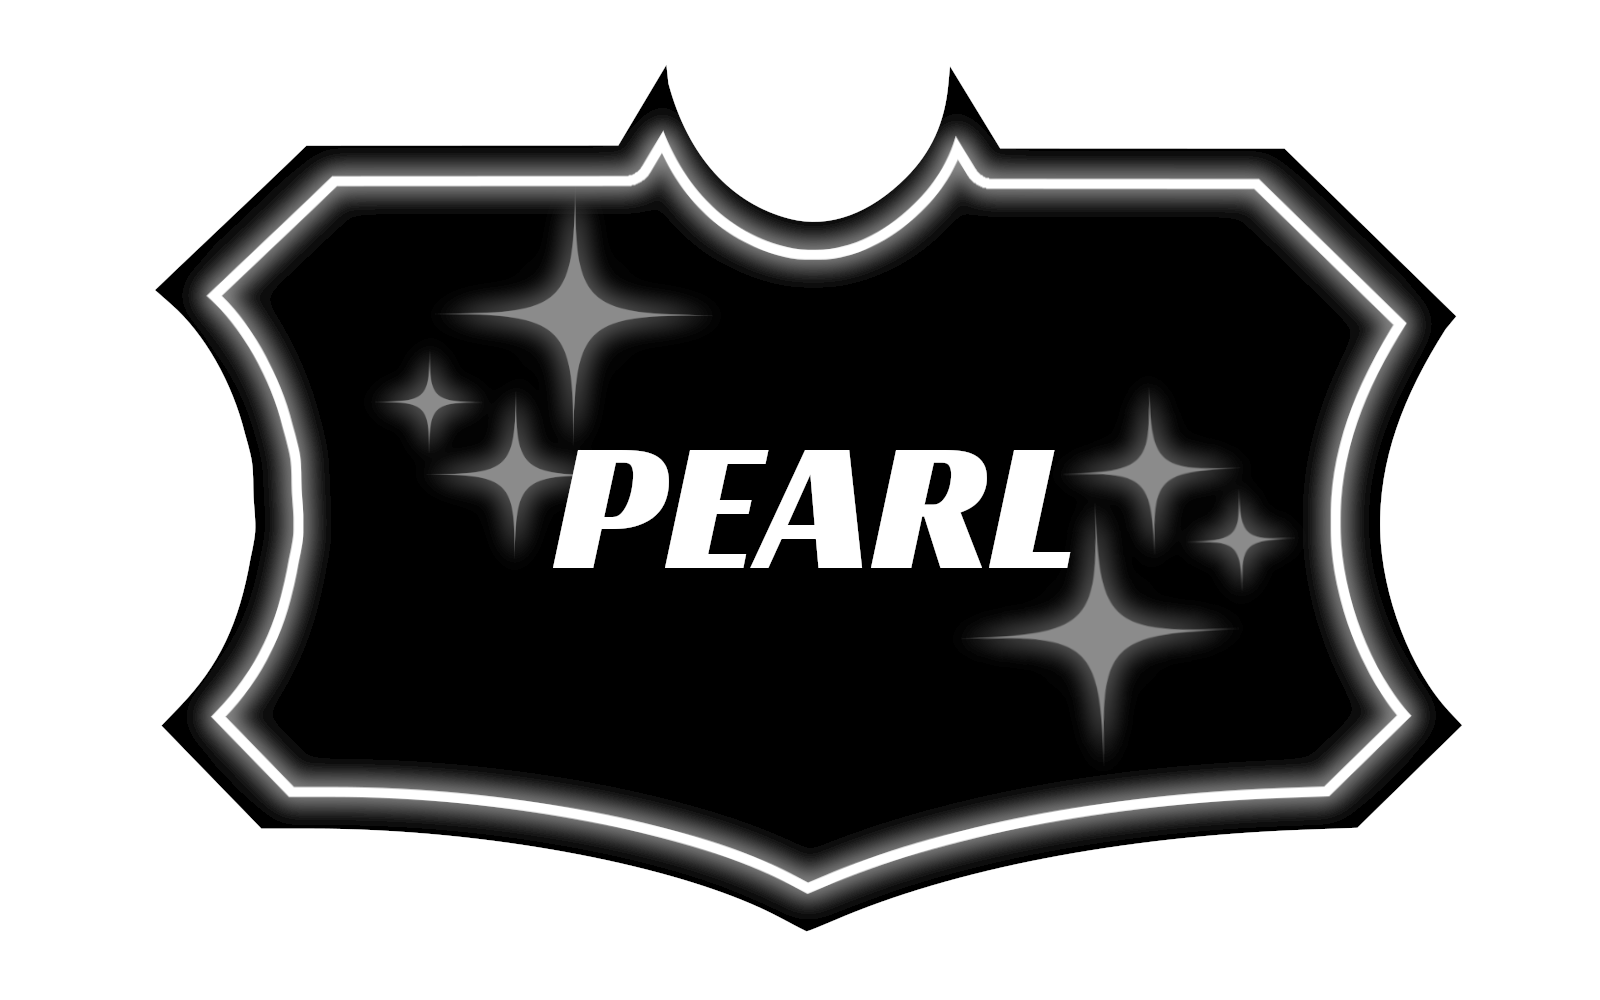 pearl-car-detailing-package-charlesotn-sc